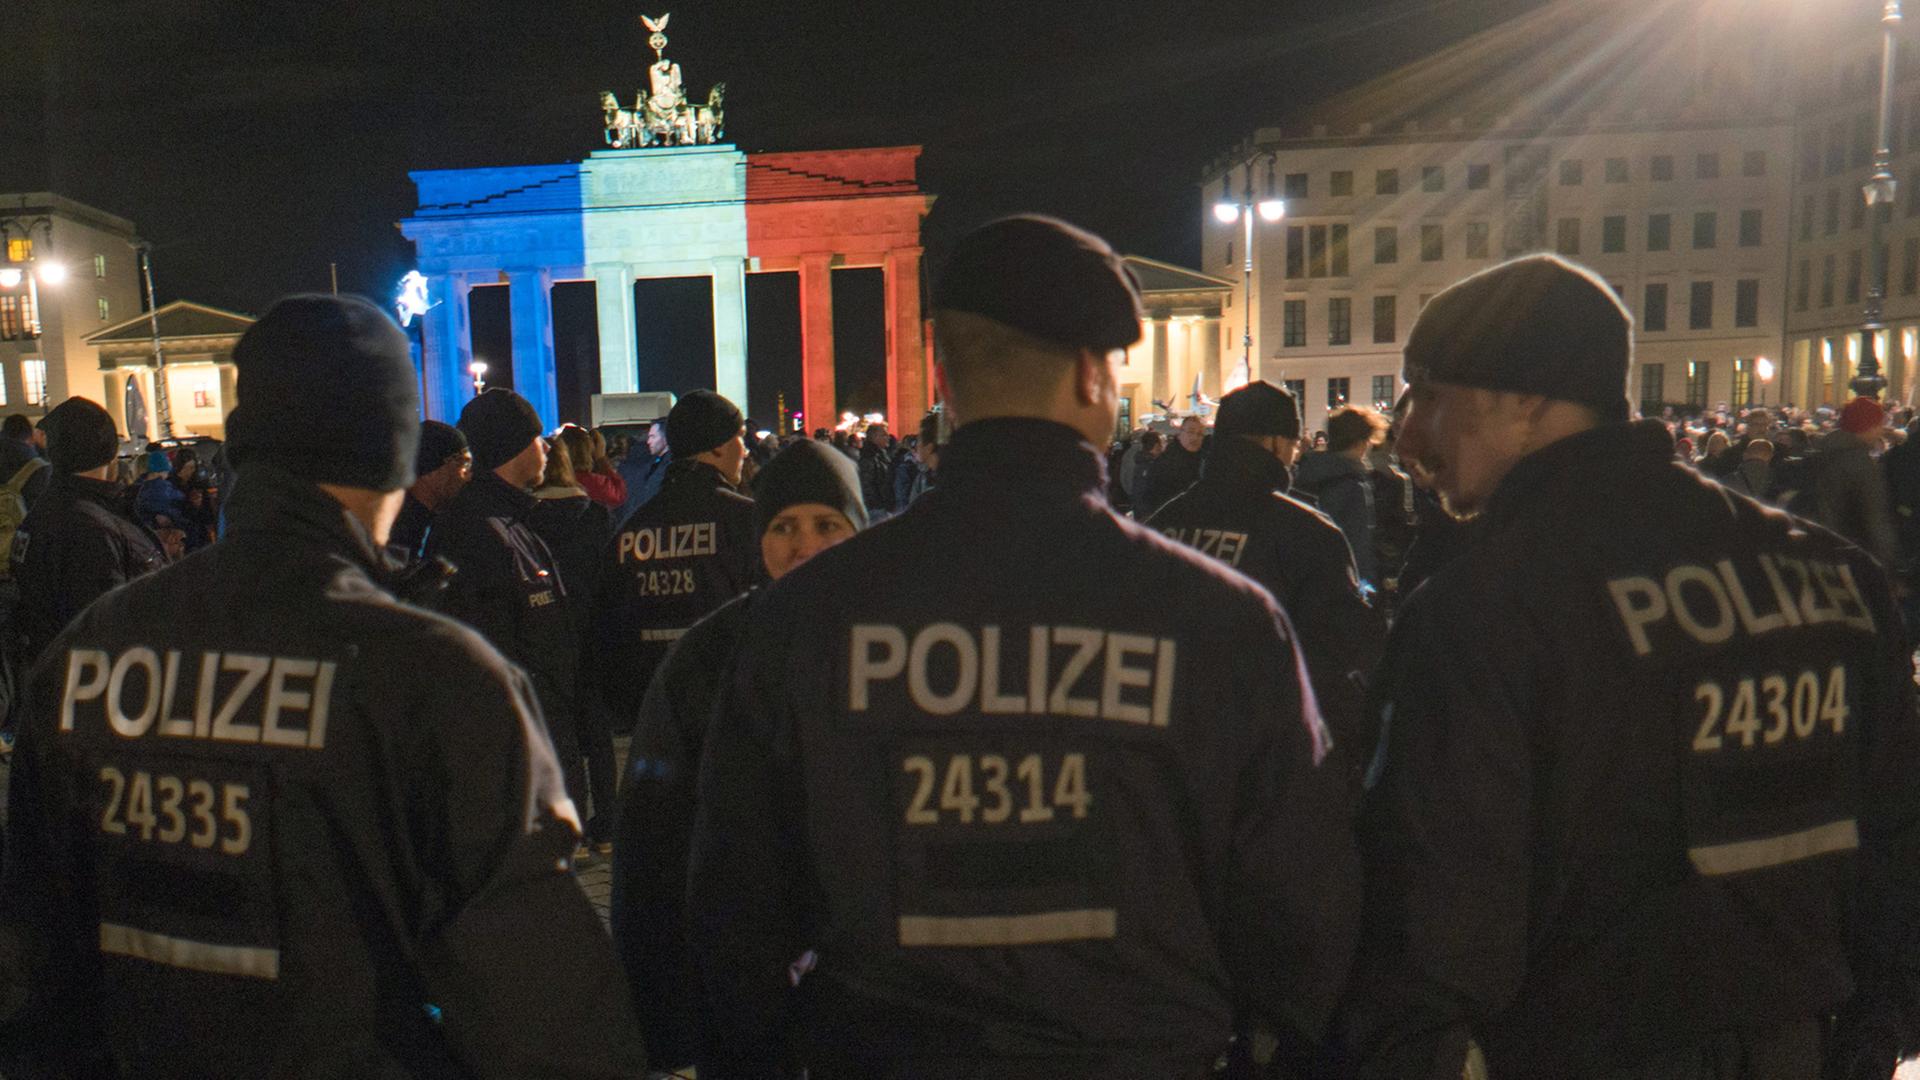 Die Polizei zeigt Präsenz vor dem Brandenburger Tor in Berlin nach den Attentaten in Paris.